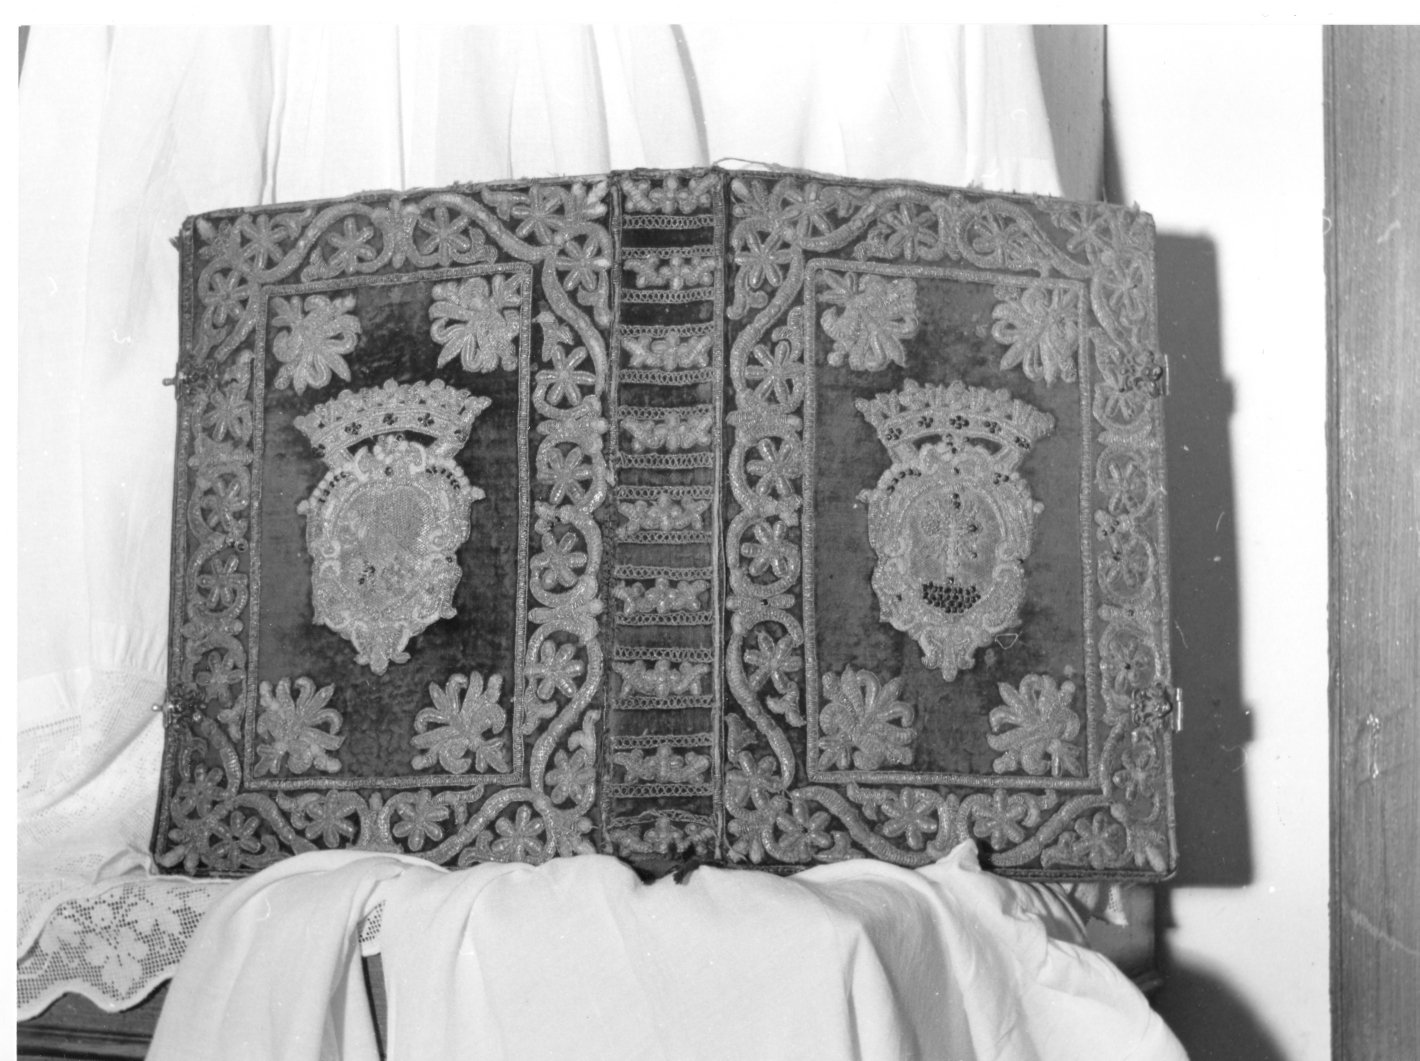 coperta di libro liturgico - manifattura napoletana (ultimo quarto sec. XVII)